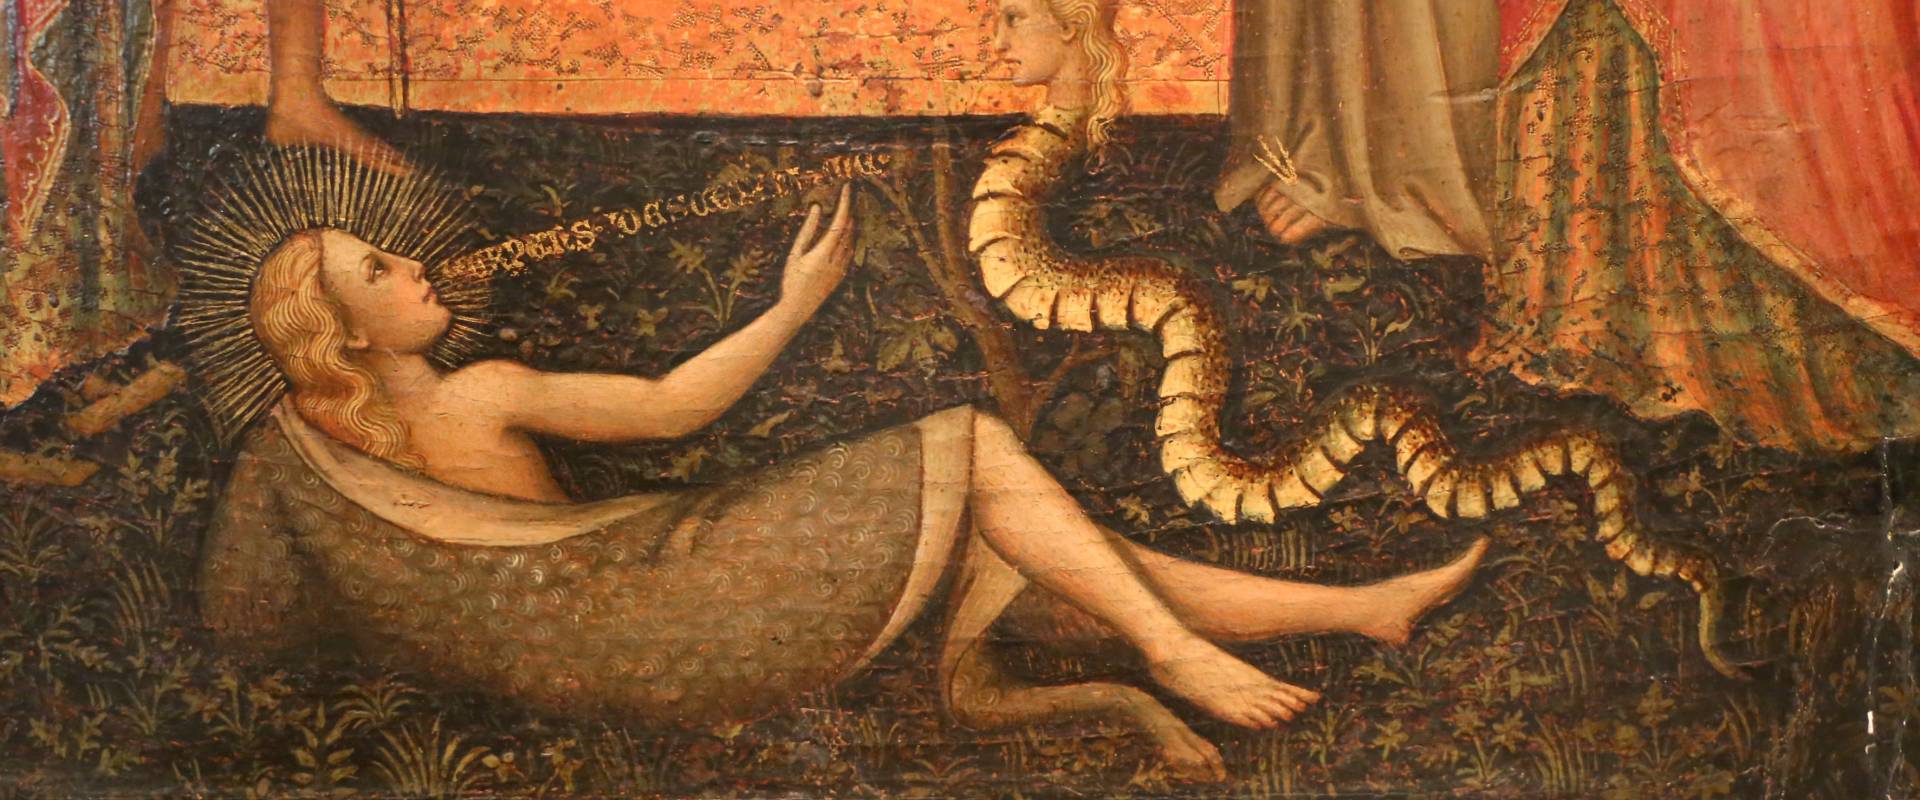 Giuliano di simone ricci, madonna col bambino in trono e quattro angeli, santi e crocifissione, 1380-1400 ca. 02 eva col serpente photo by Sailko